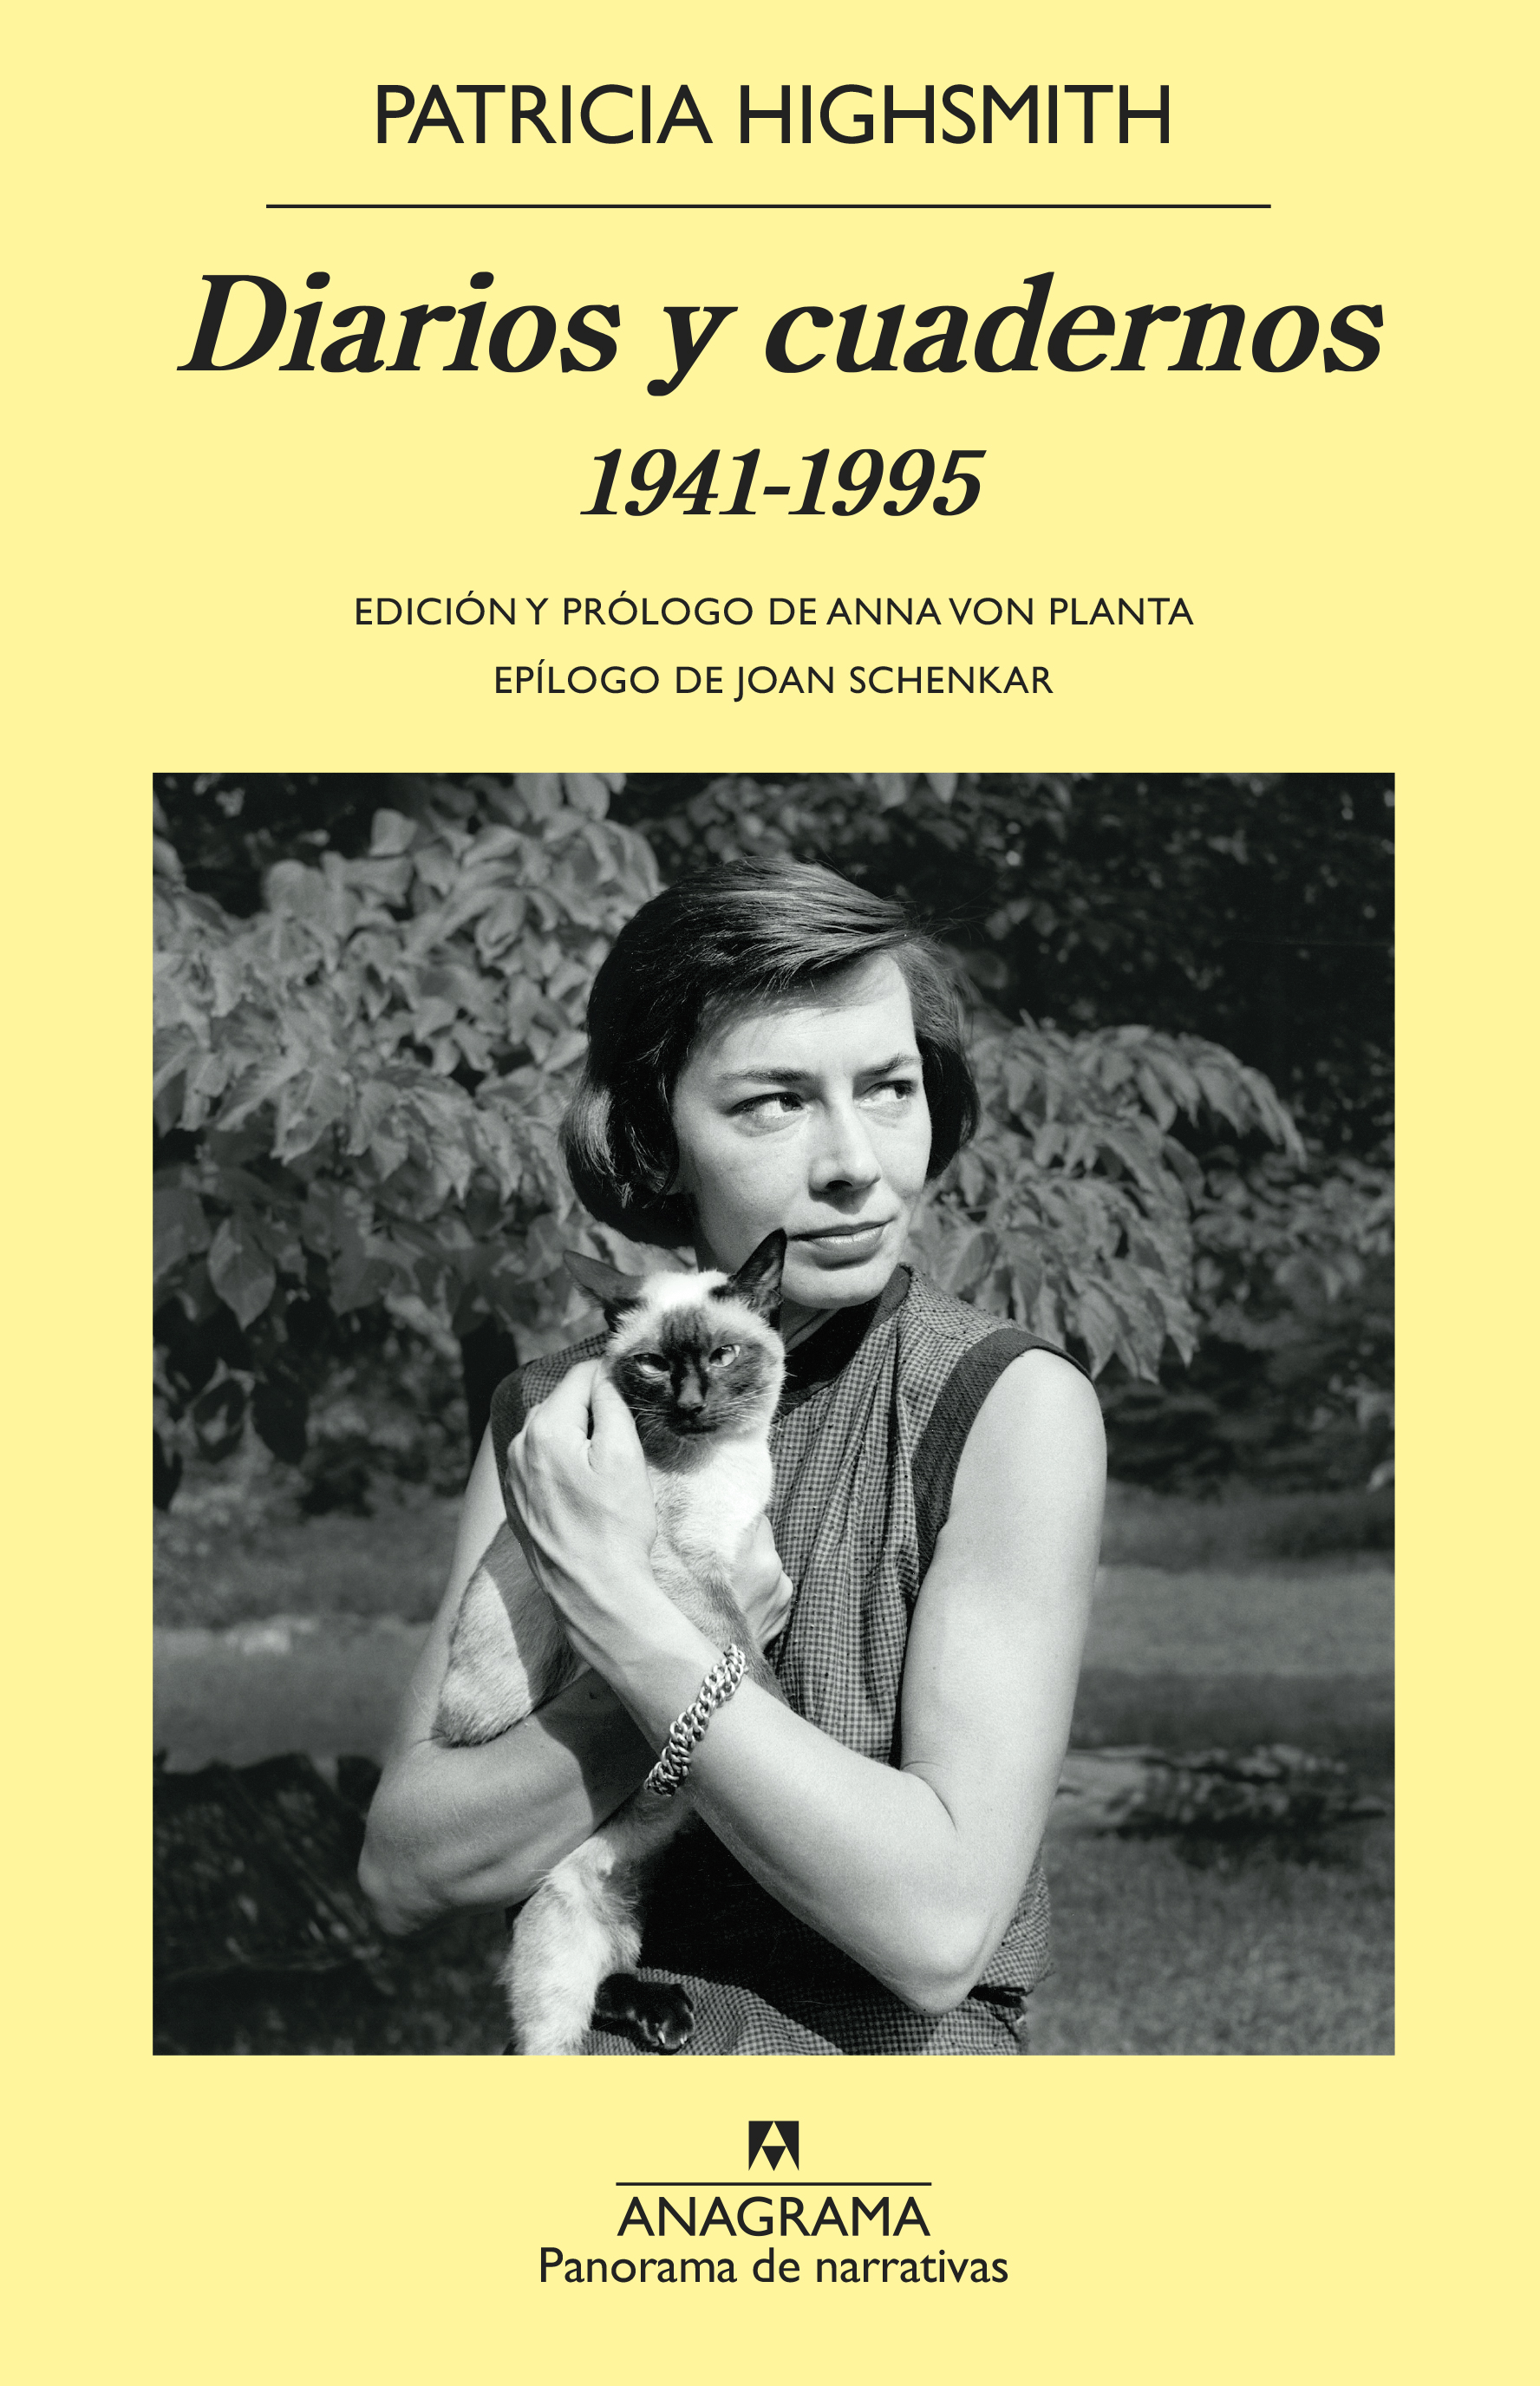 Diarios y cuadernos - Highsmith, Patricia - 978-84-339-8120-2 - Editorial Anagrama